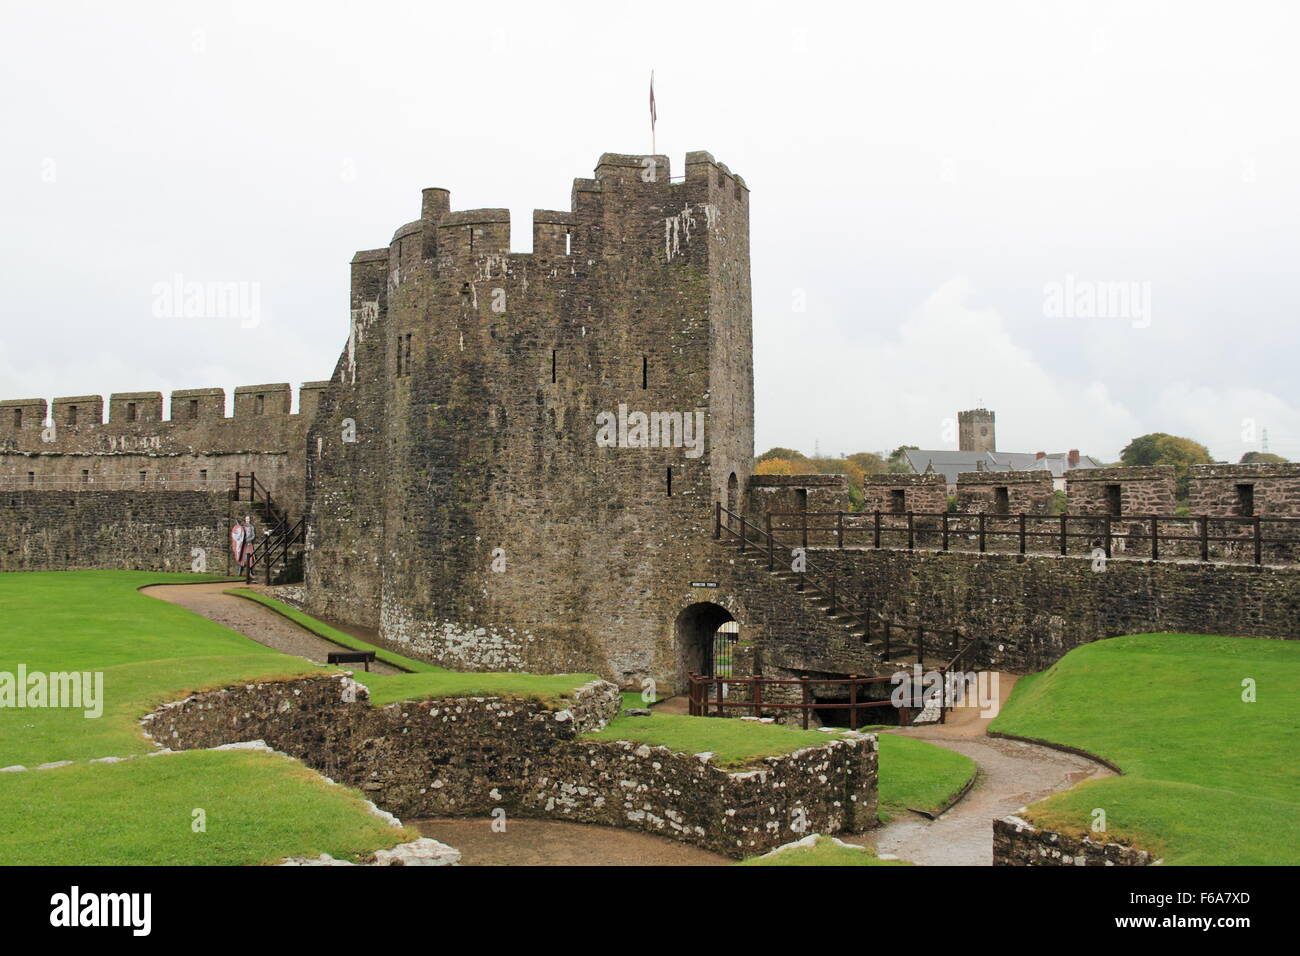 Monkton Tower et poterne, Château de Pembroke Dyfed, Pembrokeshire, Pays de Galles, Grande-Bretagne, Royaume-Uni, Europe, Royaume-Uni Banque D'Images